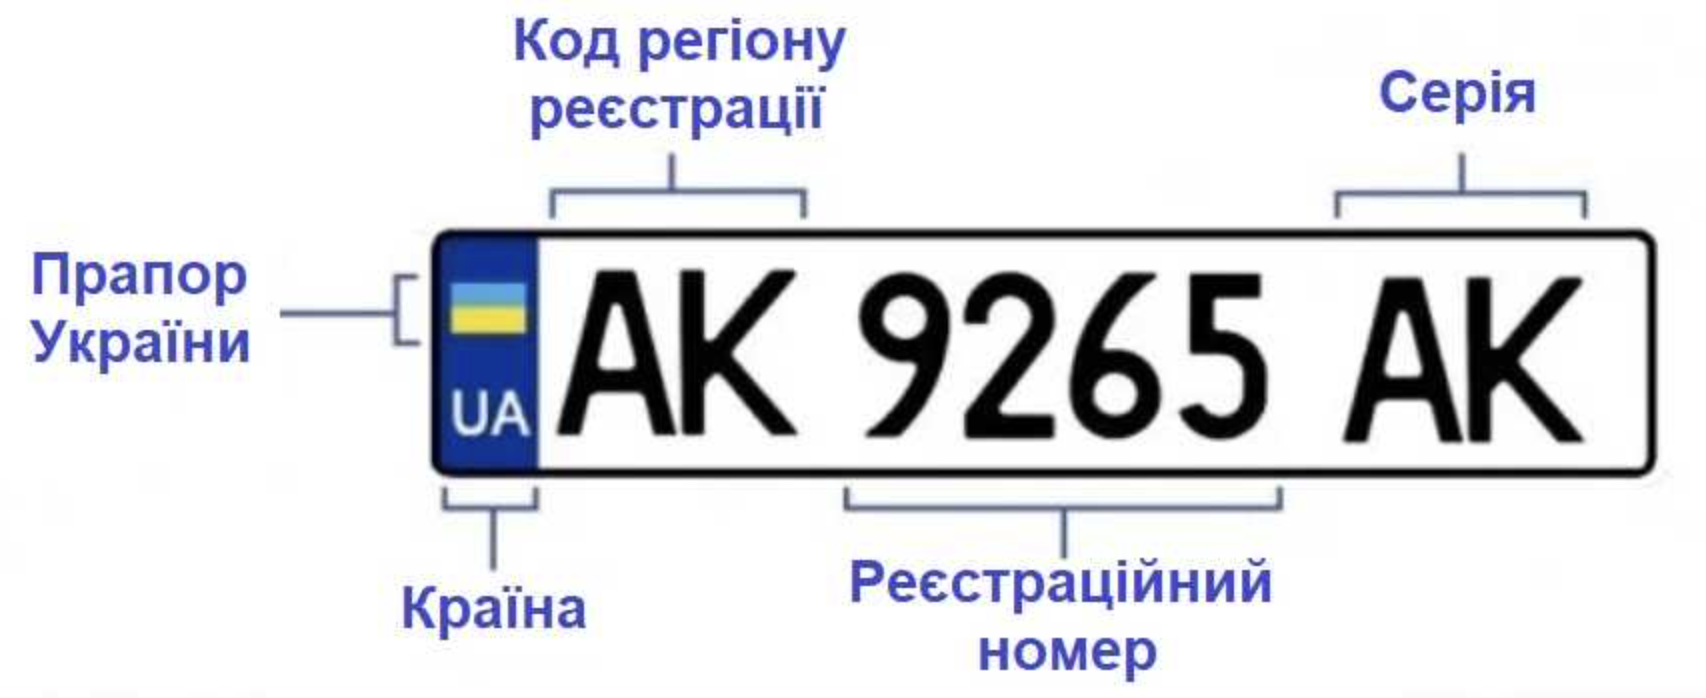 Обозначение автомобильных номеров Украины. Номерные знаки регионов Украины. Автомобильные номера Украины по регионам расшифровка. Номера Украины автомобильные. С каких цифр начинается украинский номер